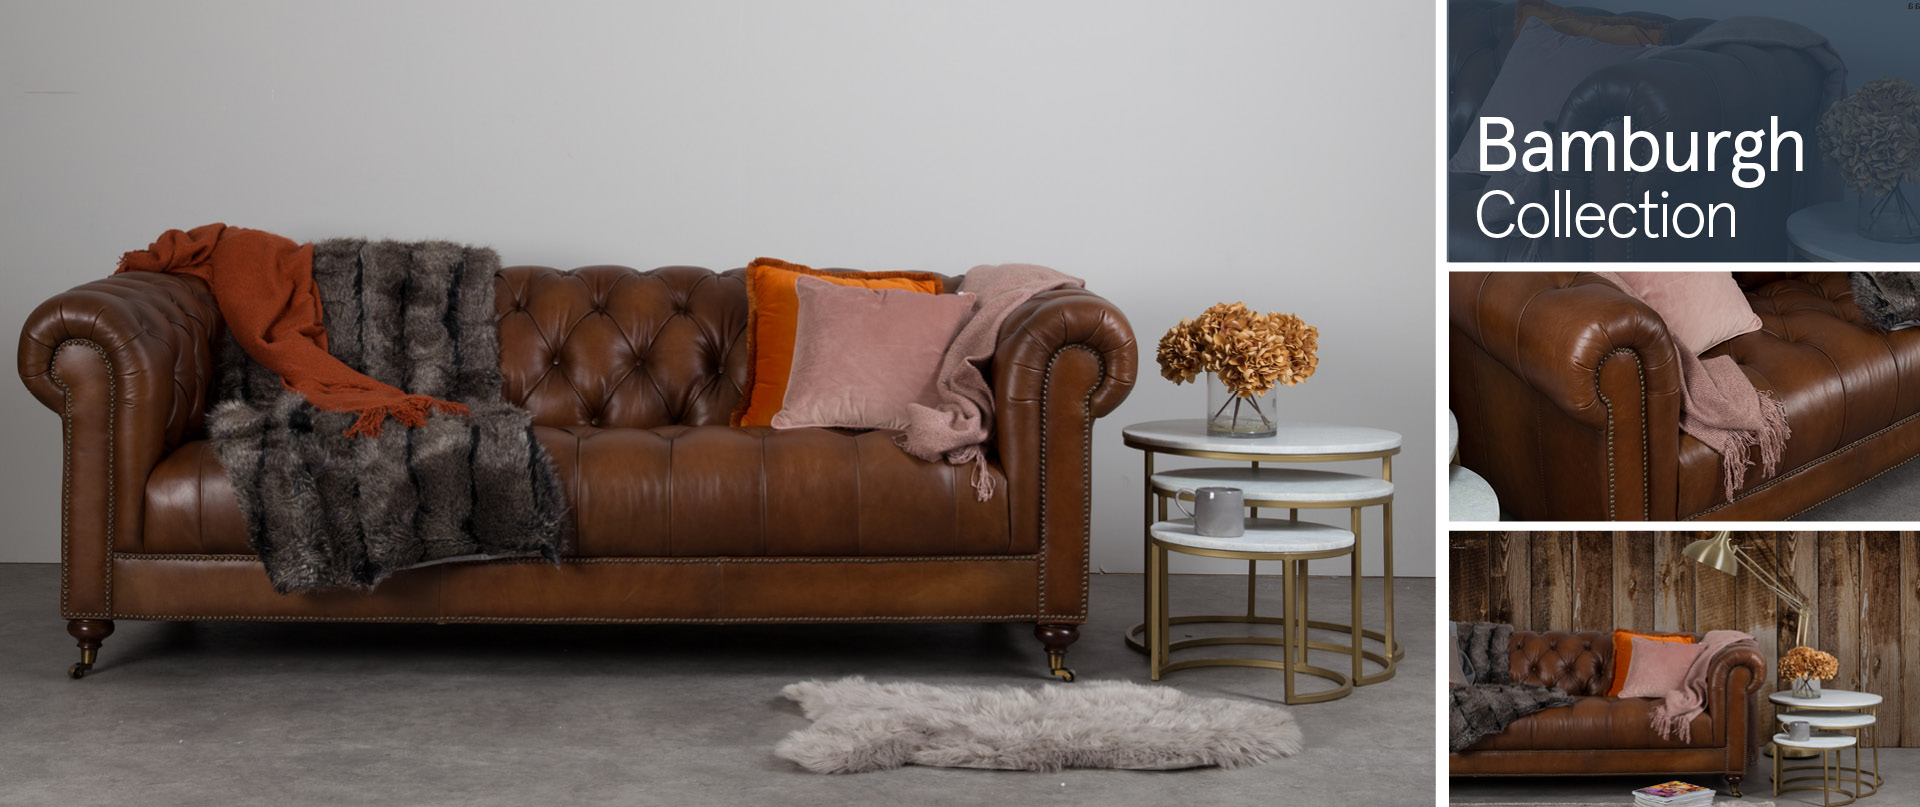 Bamburgh Leather Sofa Ranges